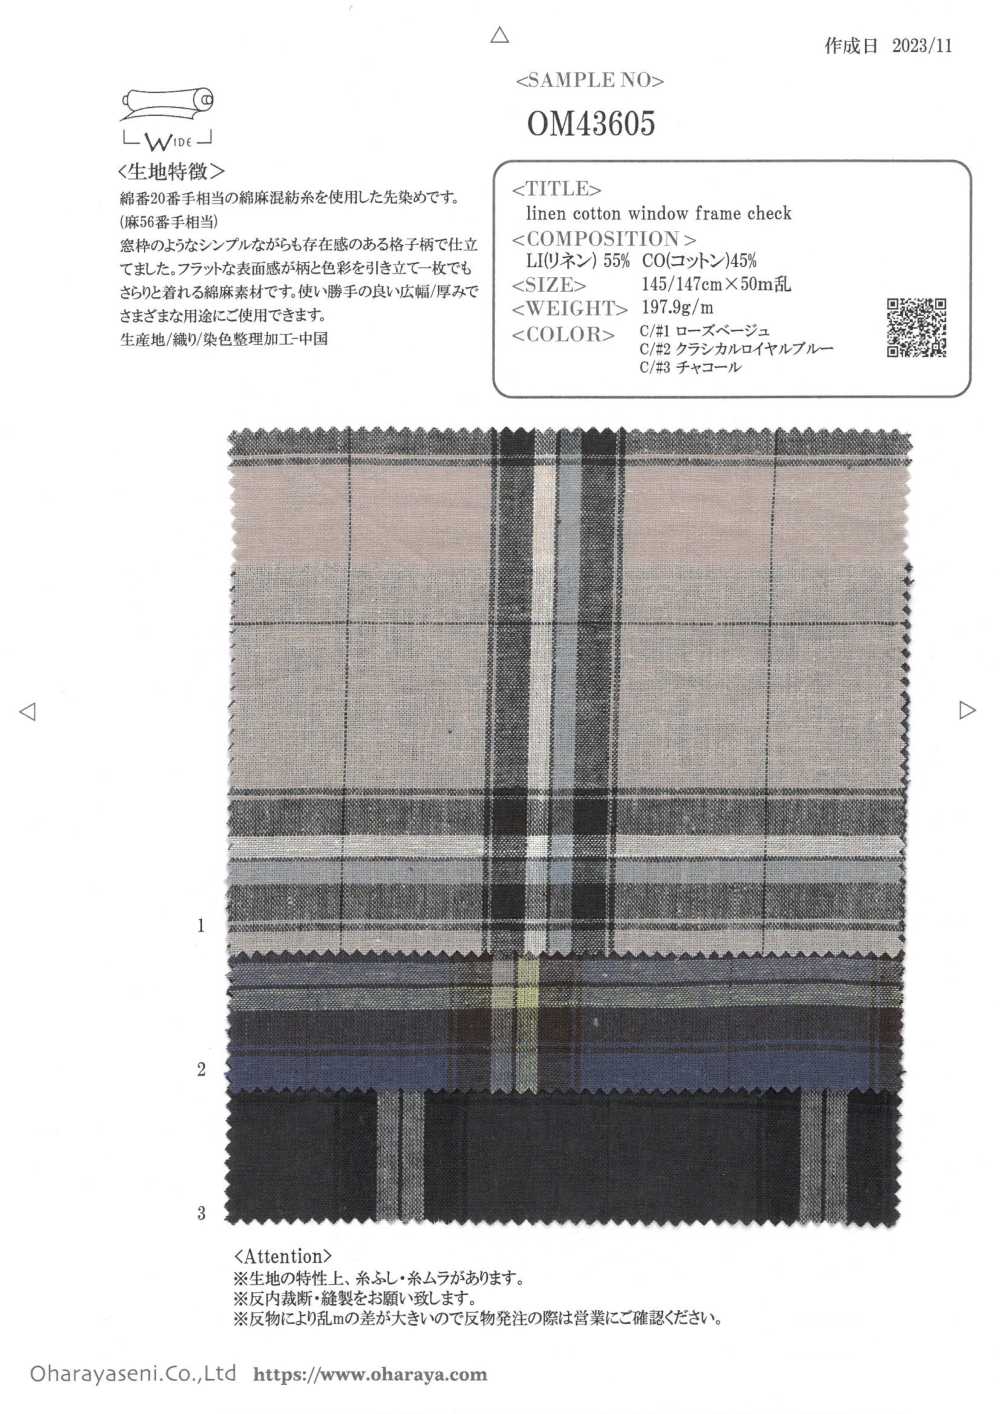 OM43605 Cuadros De Marco De Ventana De Lino Y Algodón[Fabrica Textil] Oharayaseni